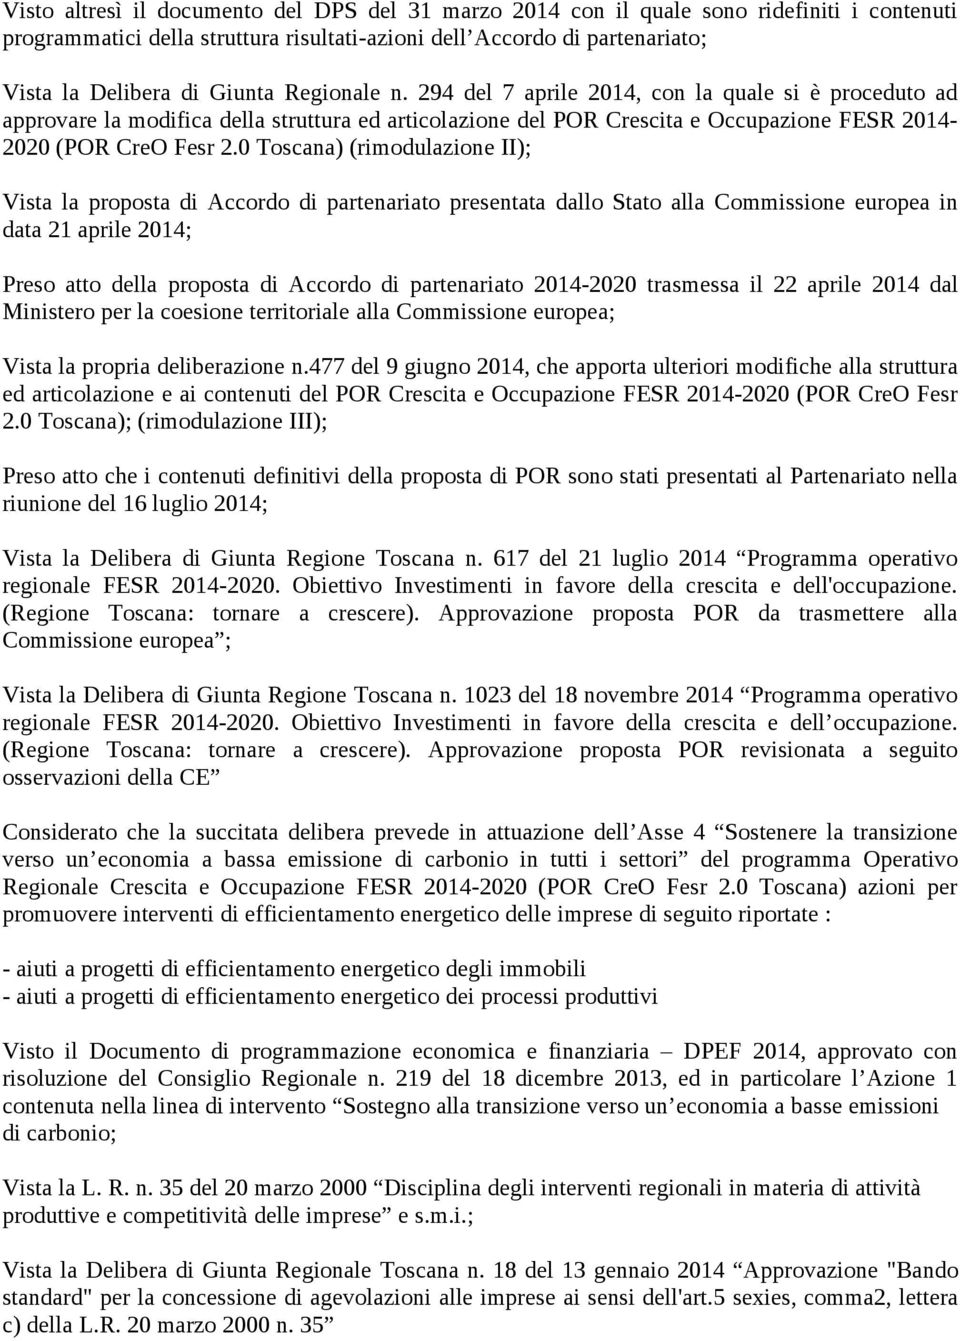 0 Toscana) (rimodulazione II); Vista la proposta di Accordo di partenariato presentata dallo Stato alla Commissione europea in data 21 aprile 2014; Preso atto della proposta di Accordo di